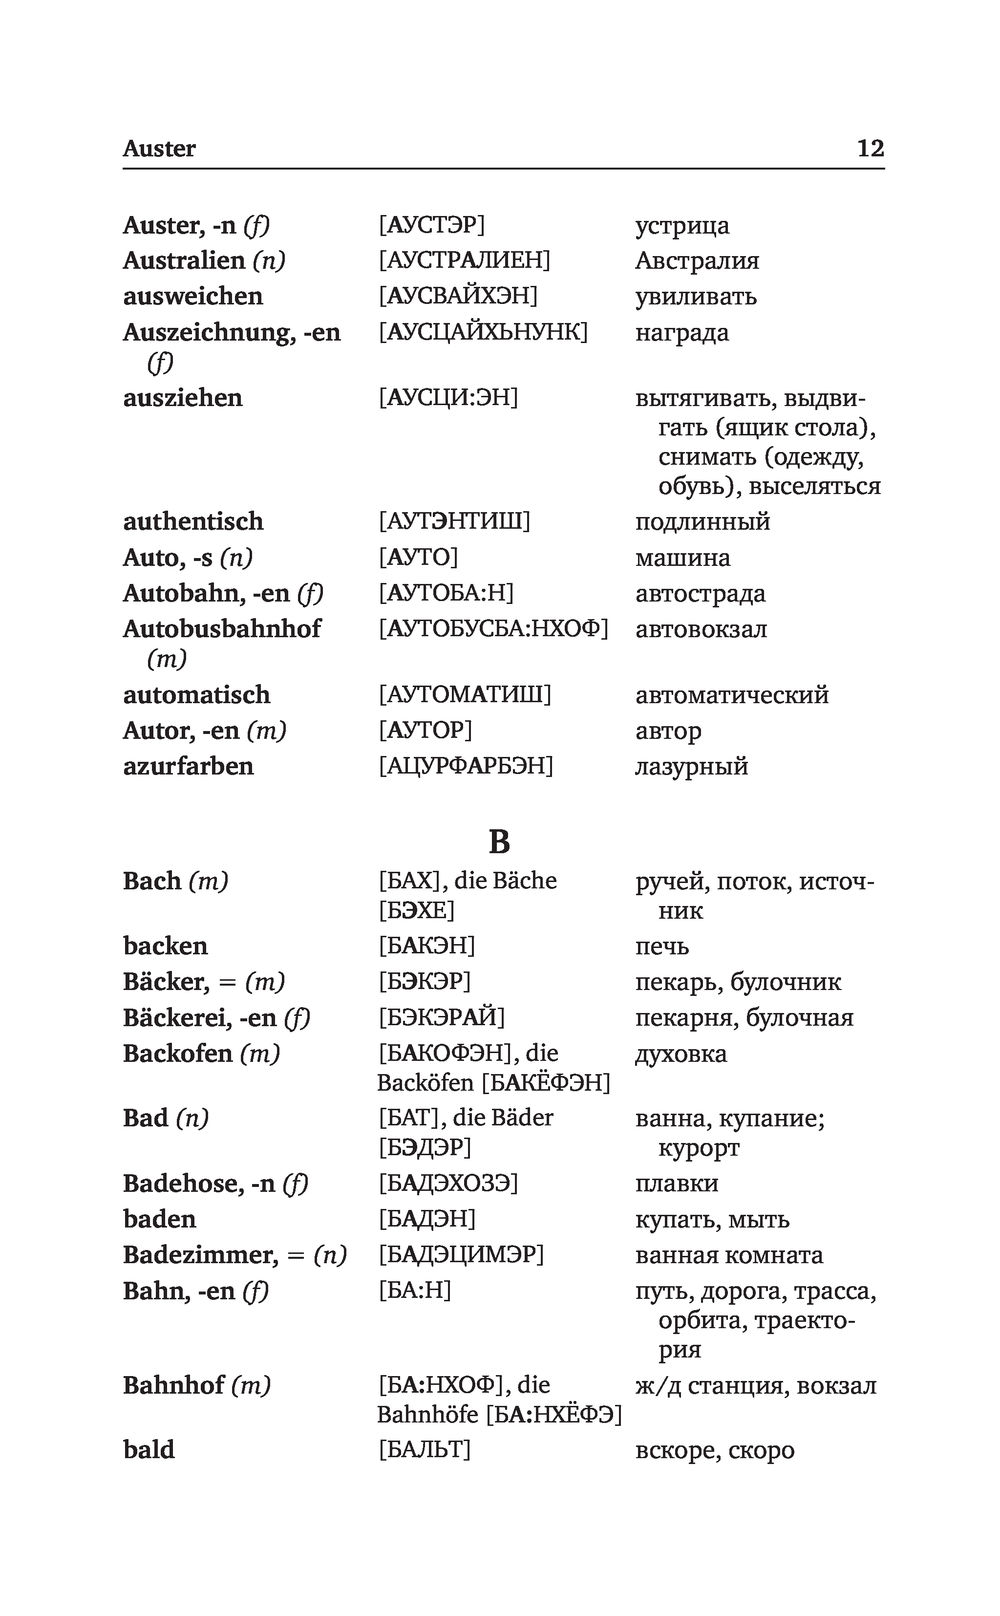 Перевести немецкие слова на русский язык